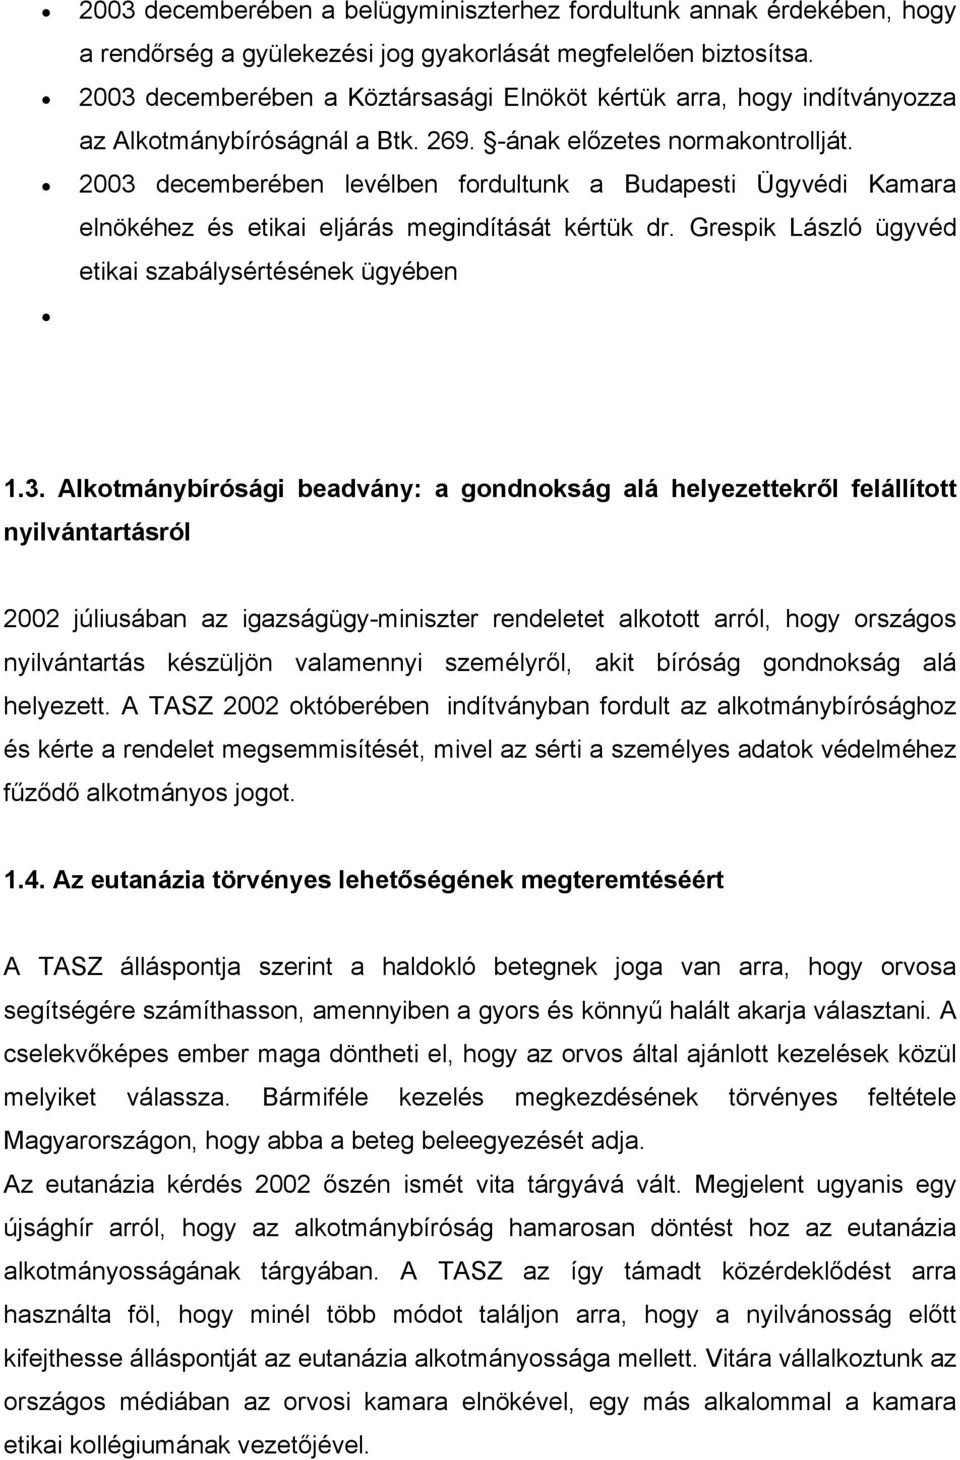 2003 decemberében levélben fordultunk a Budapesti Ügyvédi Kamara elnökéhez és etikai eljárás megindítását kértük dr. Grespik László ügyvéd etikai szabálysértésének ügyében 1.3. Alkotmánybírósági